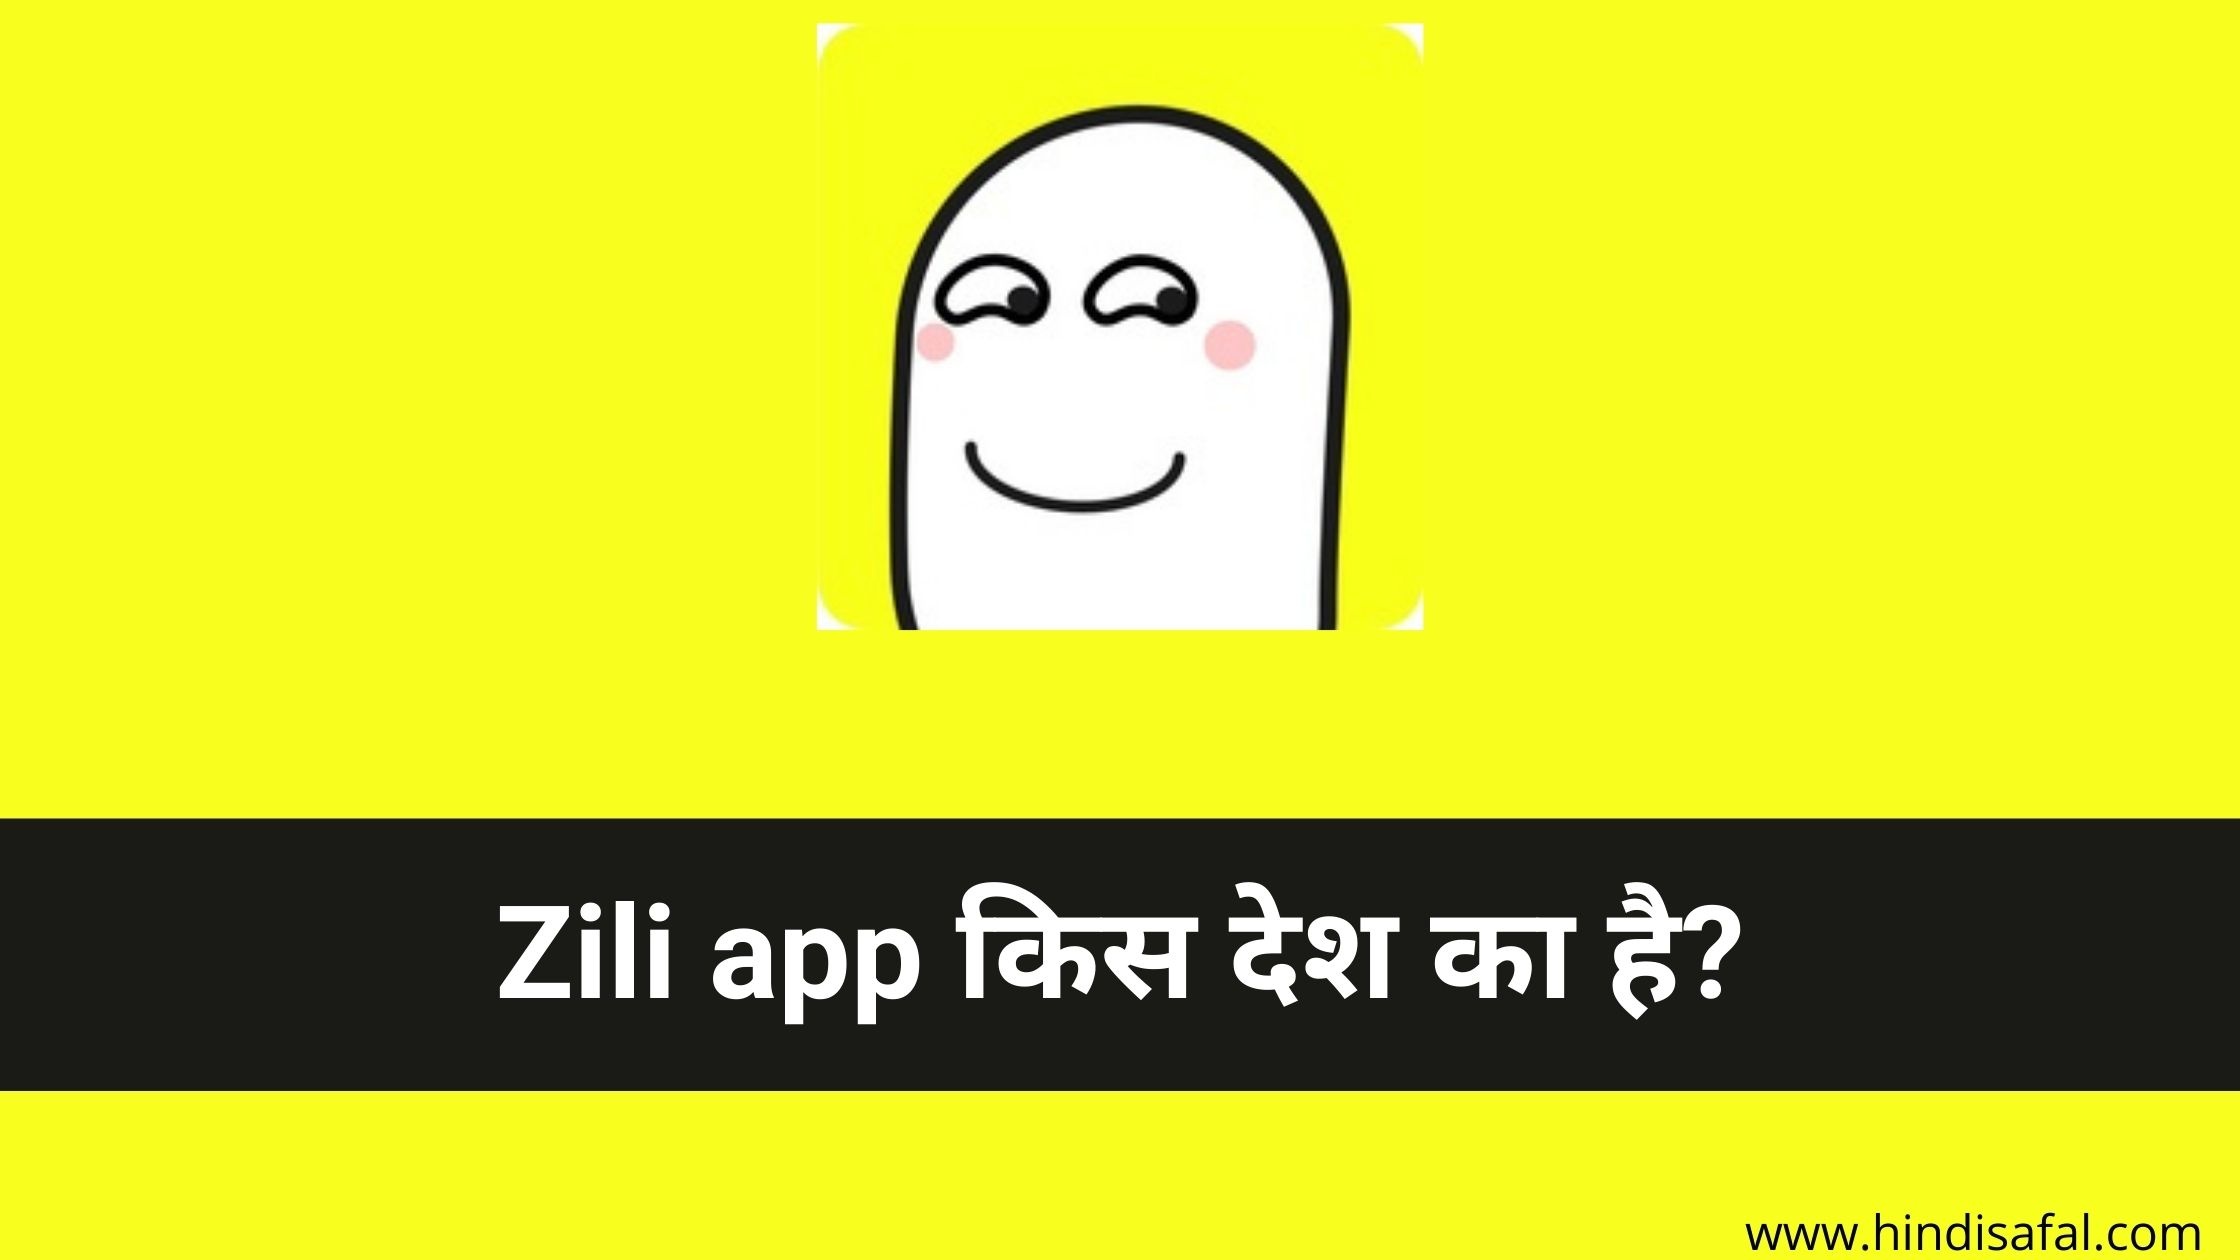 Zili app किस देश का है